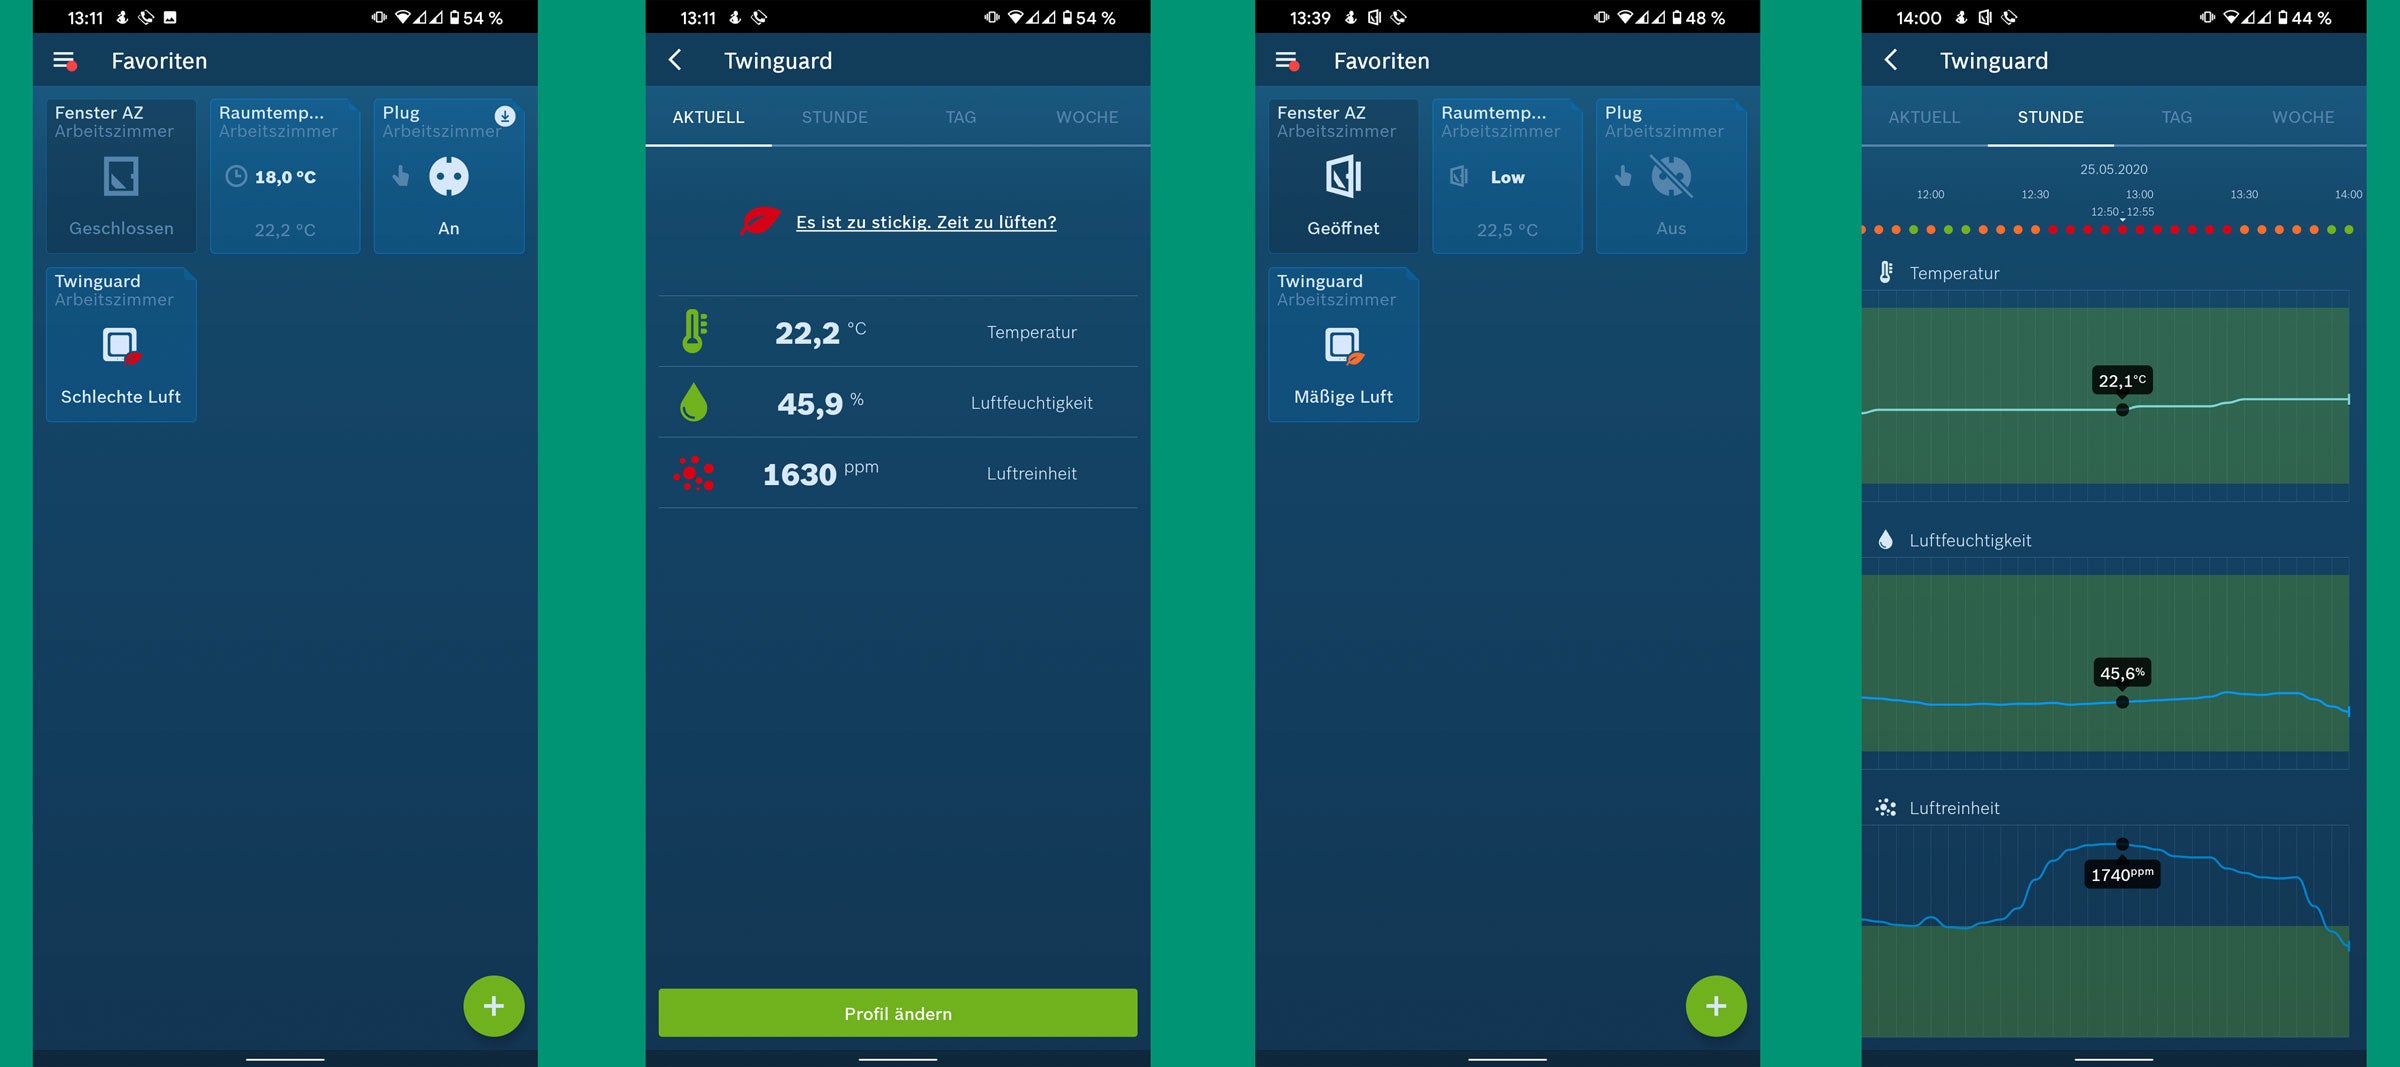 Screenhots aus der Bosch-Smart Home App zum Twinguard.